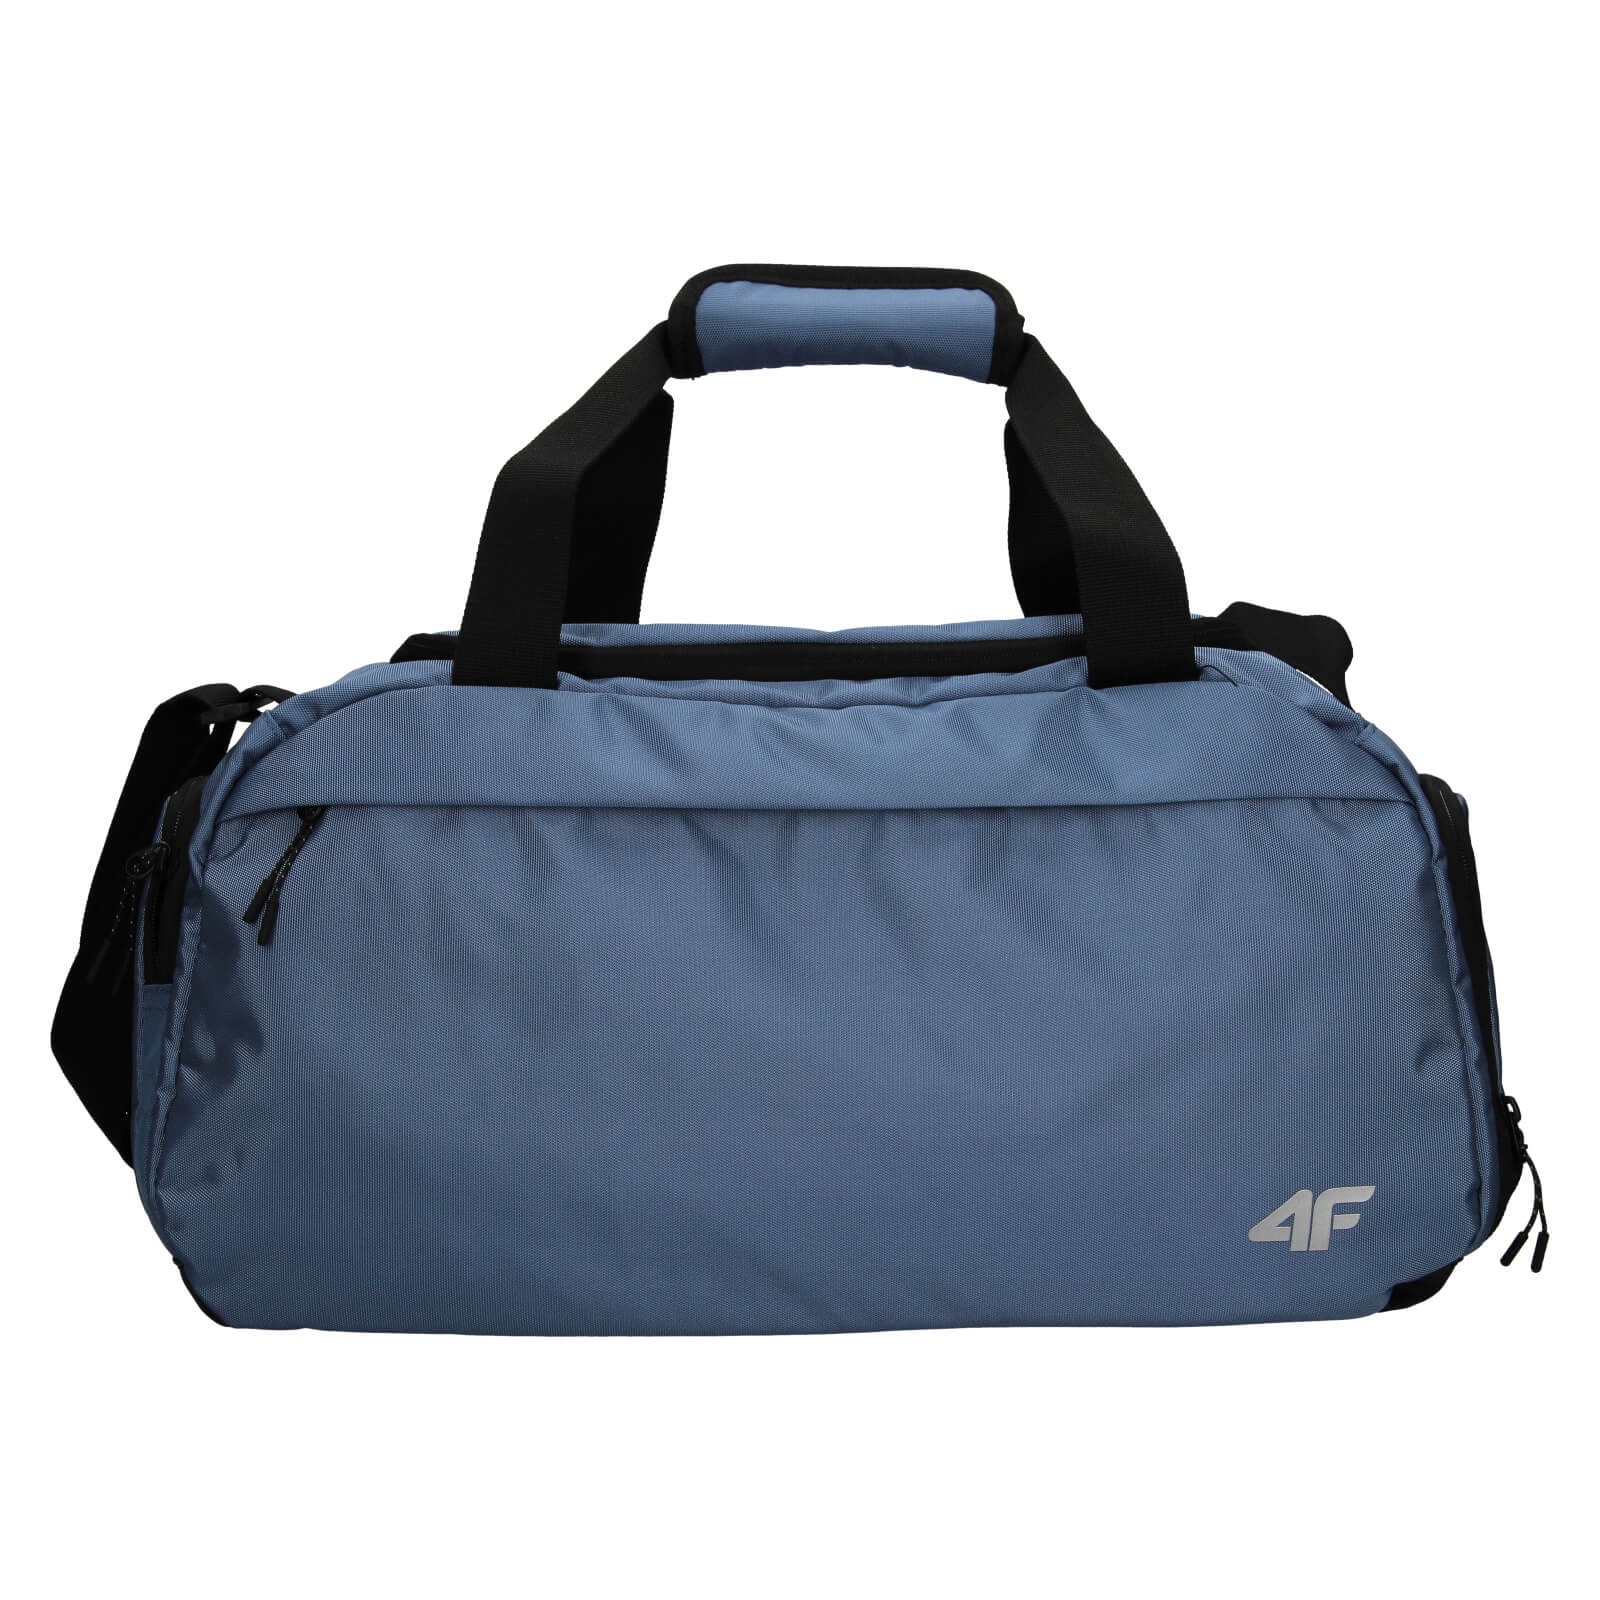 4F Peter táska - kék